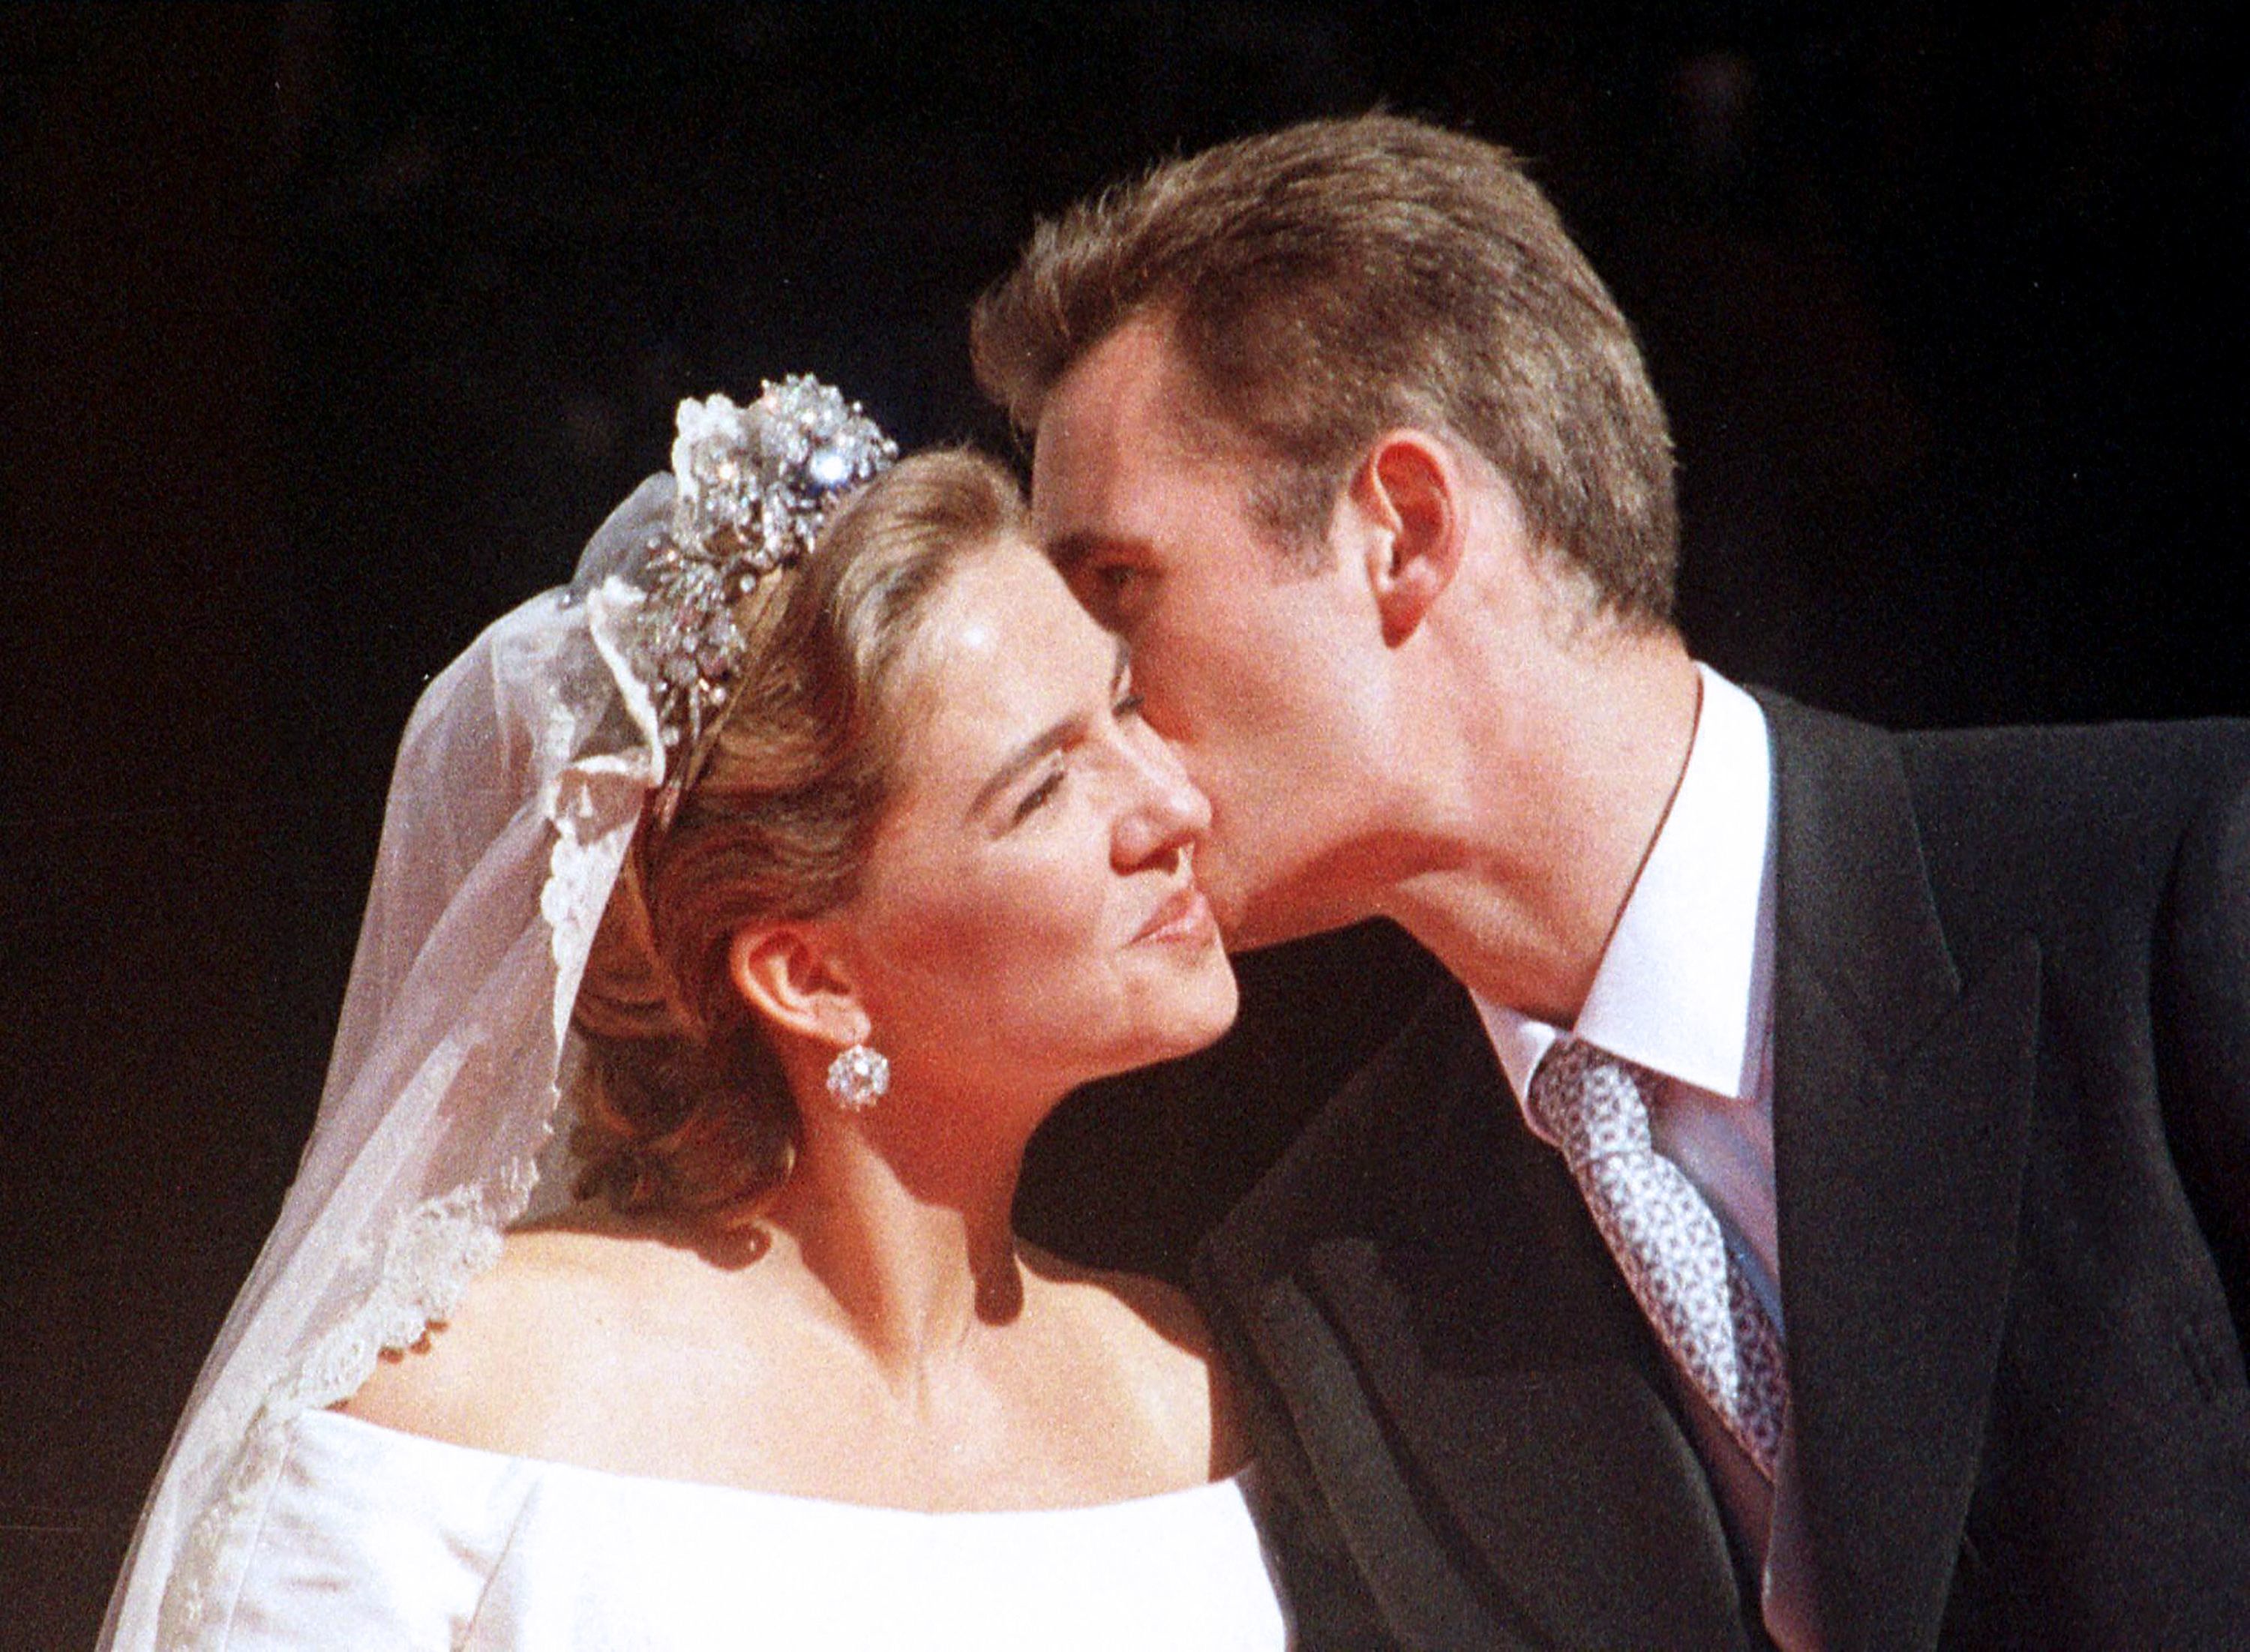 La Infanta y Urdangarin el día de su boda, el 4 de octubre de 1997.